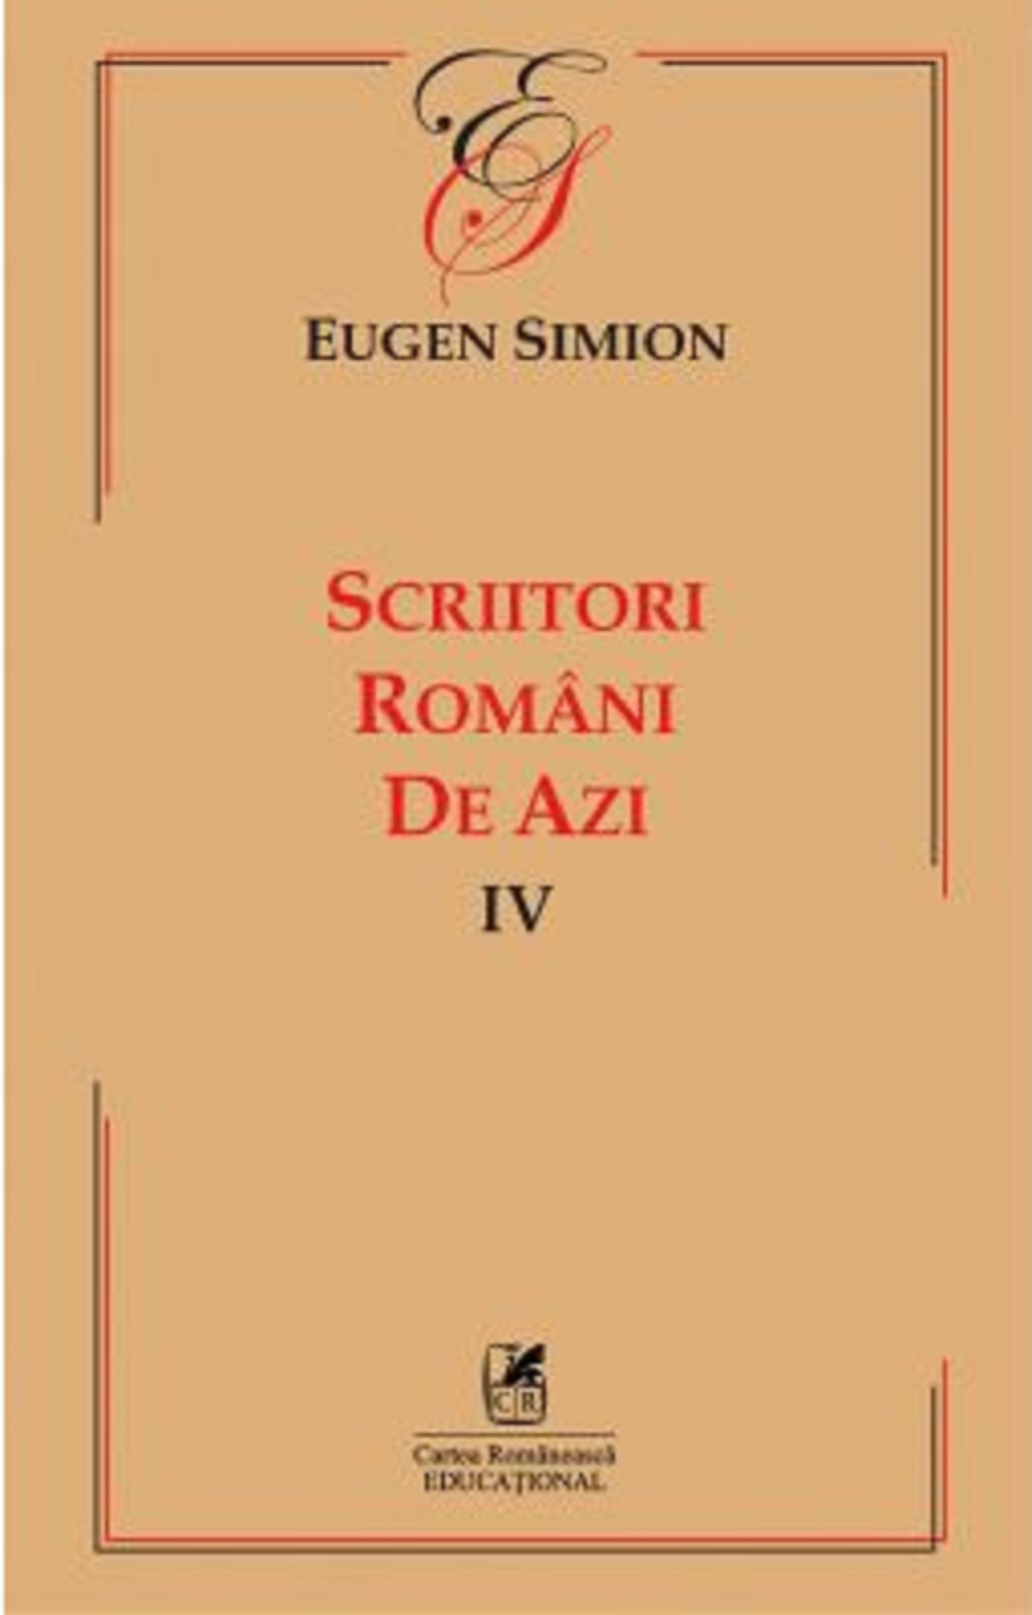 Scriitorii romani de azi IV | Eugen Simion Cartea Romaneasca imagine 2022